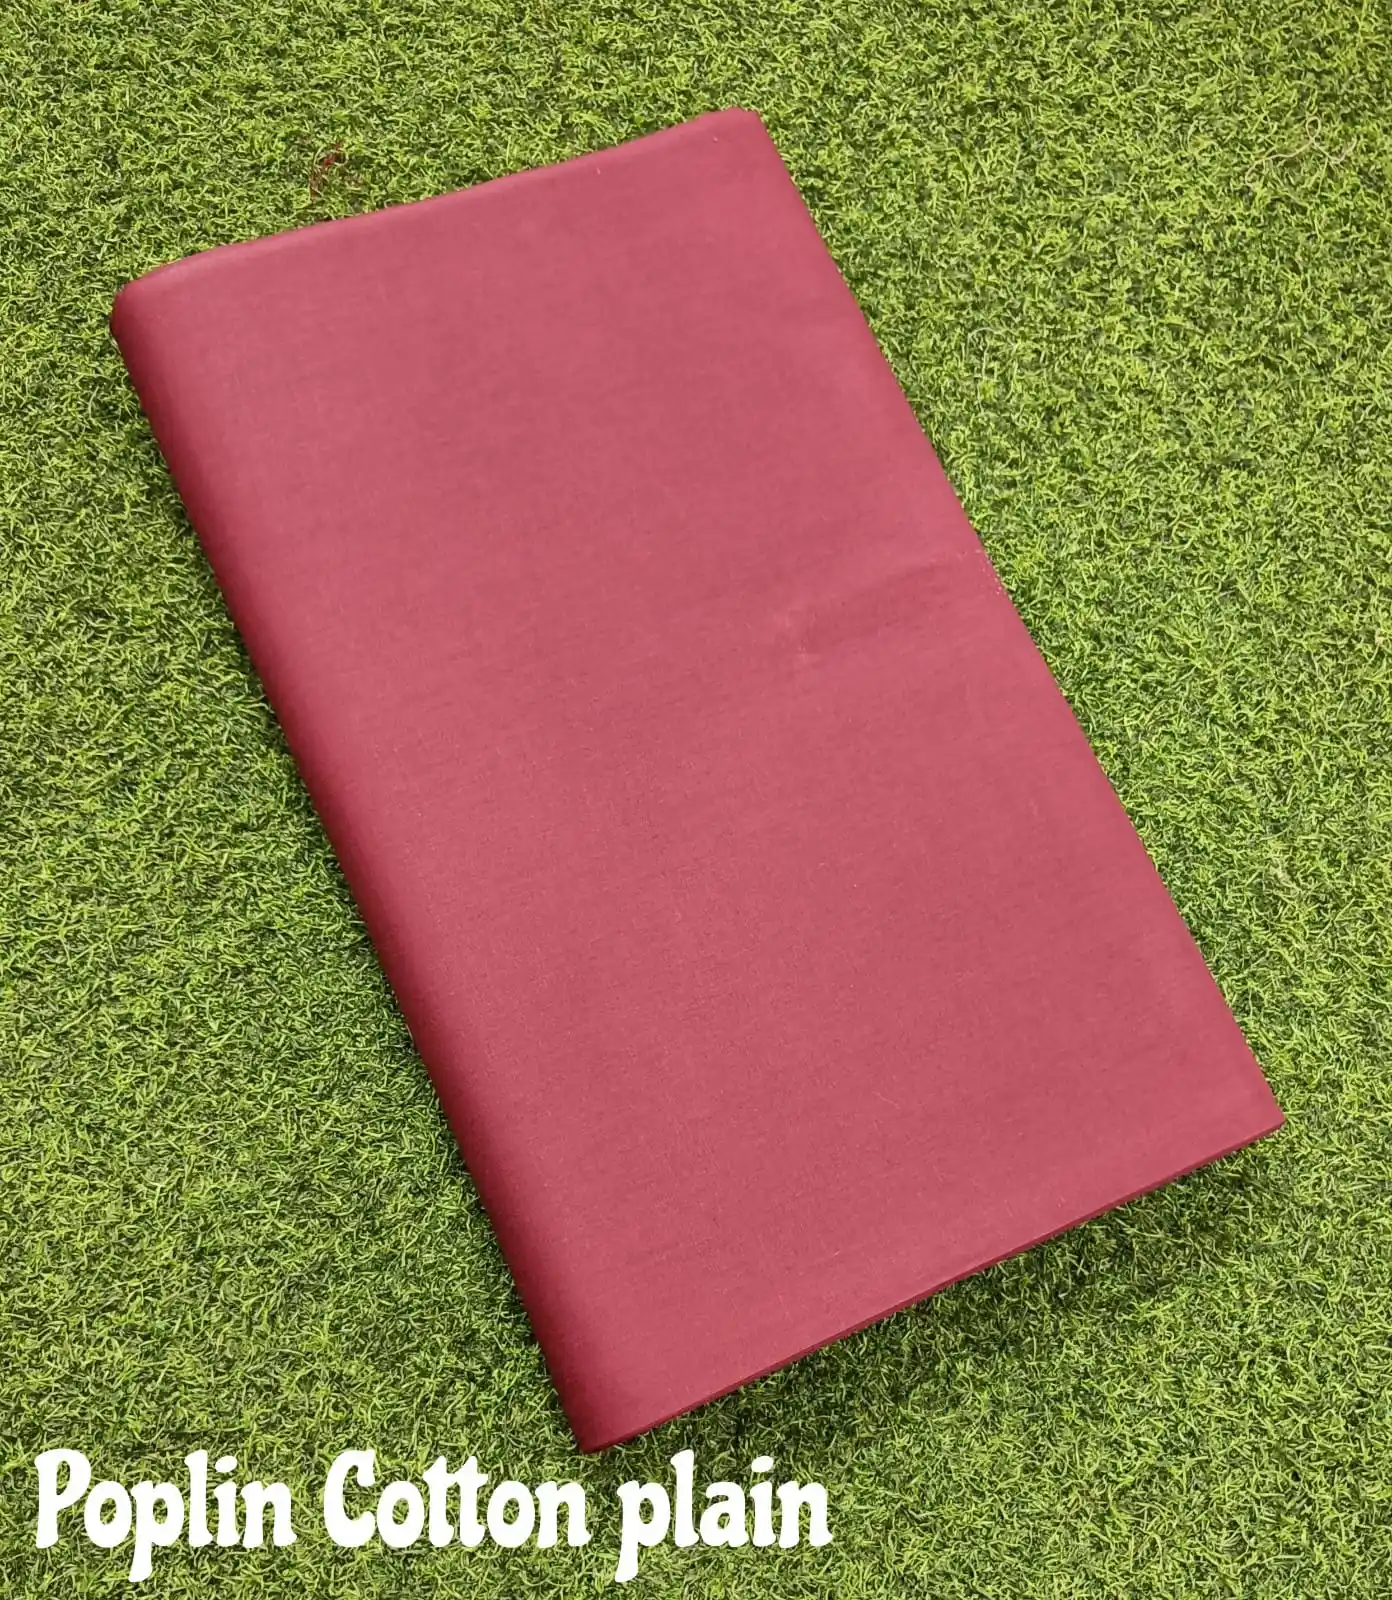 Warna yang berbeda kain katun Poplin padat dengan halaman kain katun polos